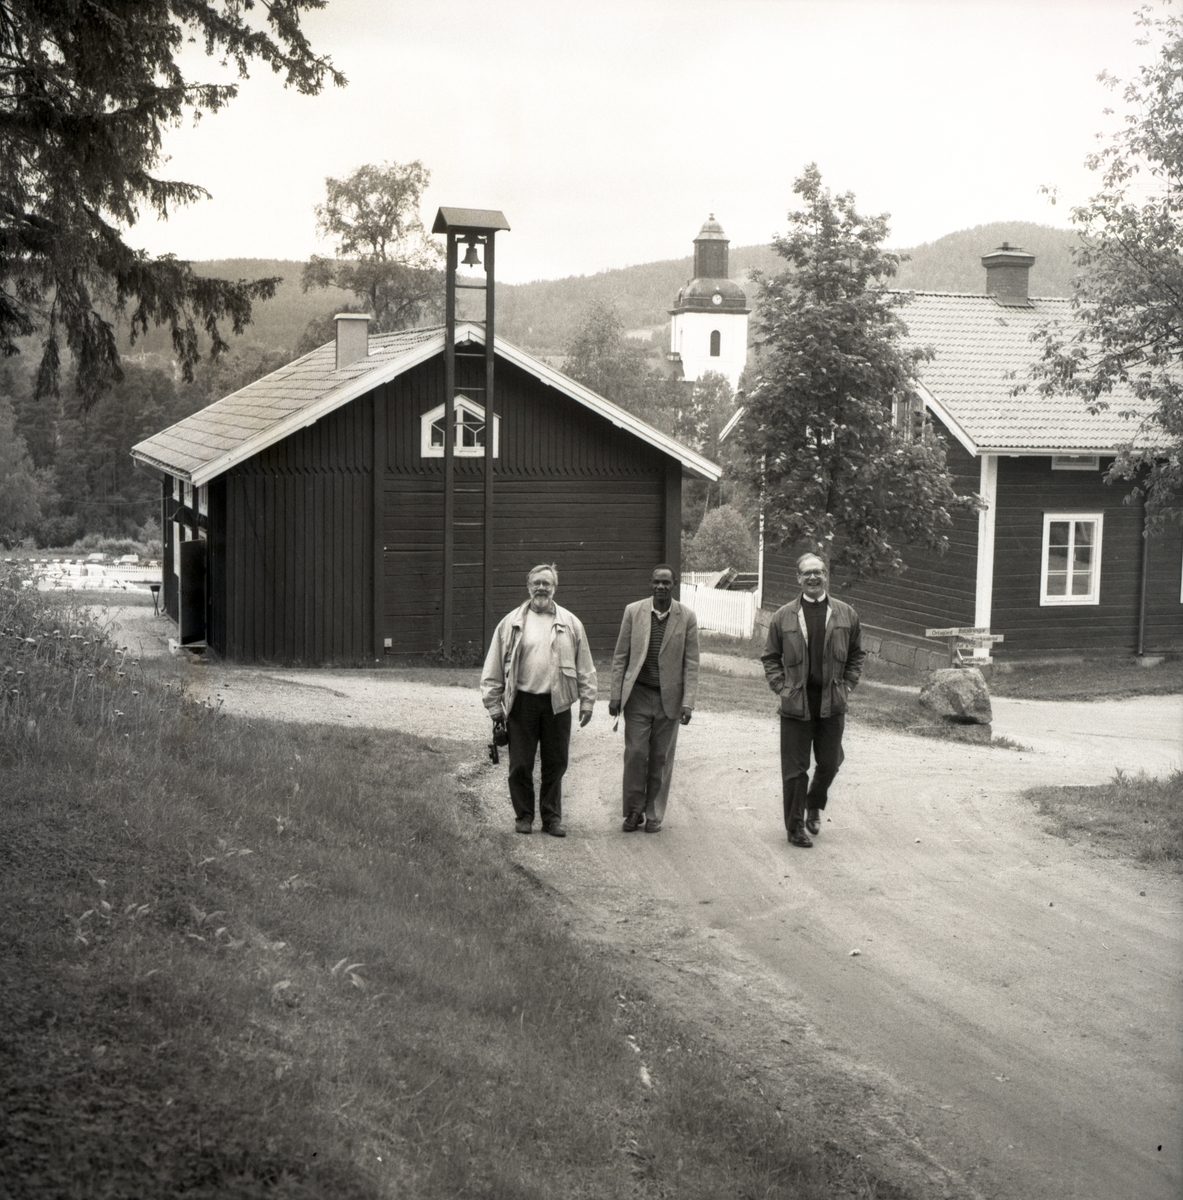 Tre män gående på en grusväg med en kyrka i bakgrunden. 1992.